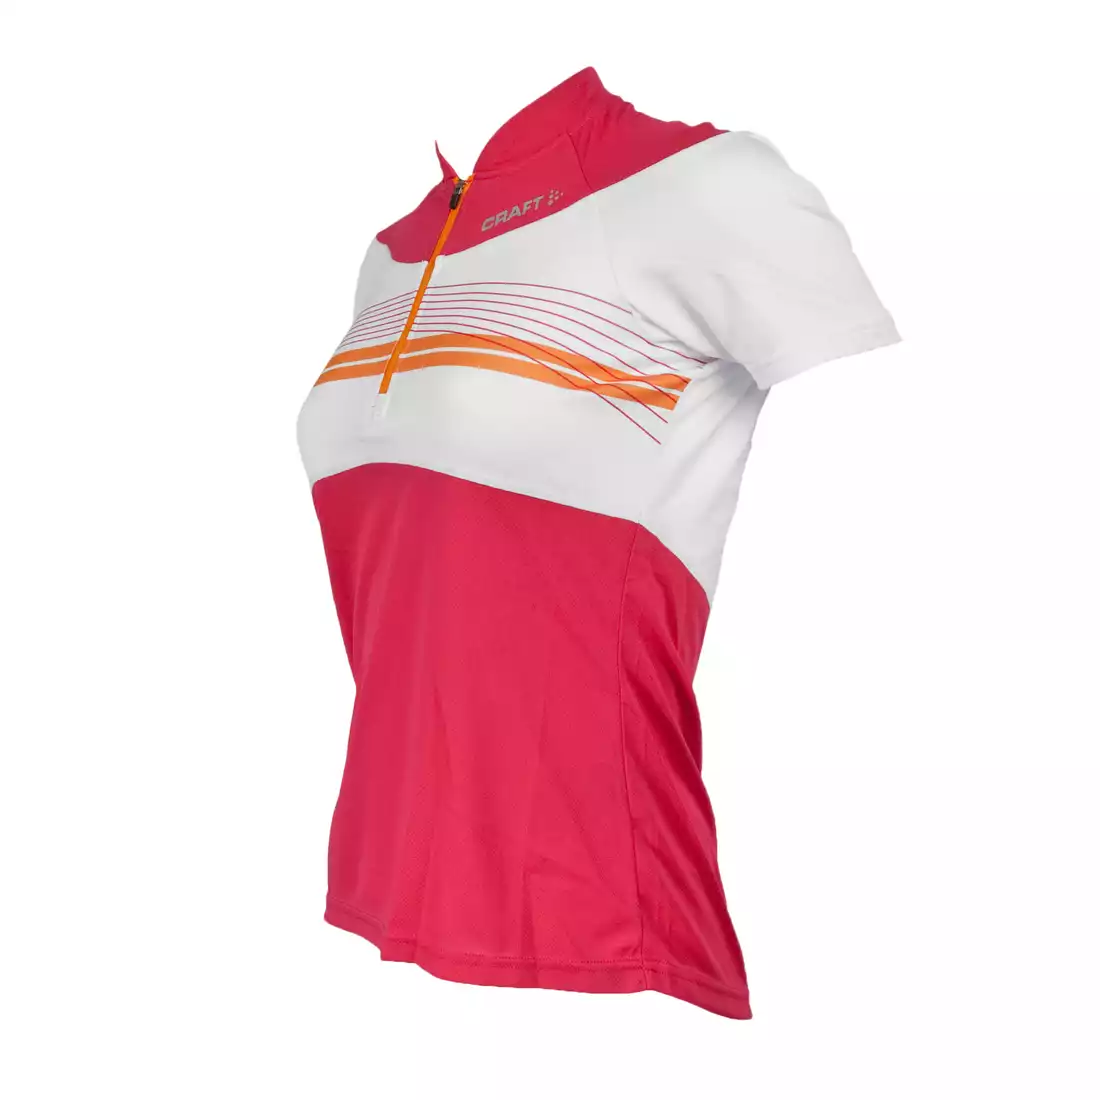 CRAFT ACTIVE BIKE - damska koszulka rowerowa 1901942-2477, kolor: biało-różowy